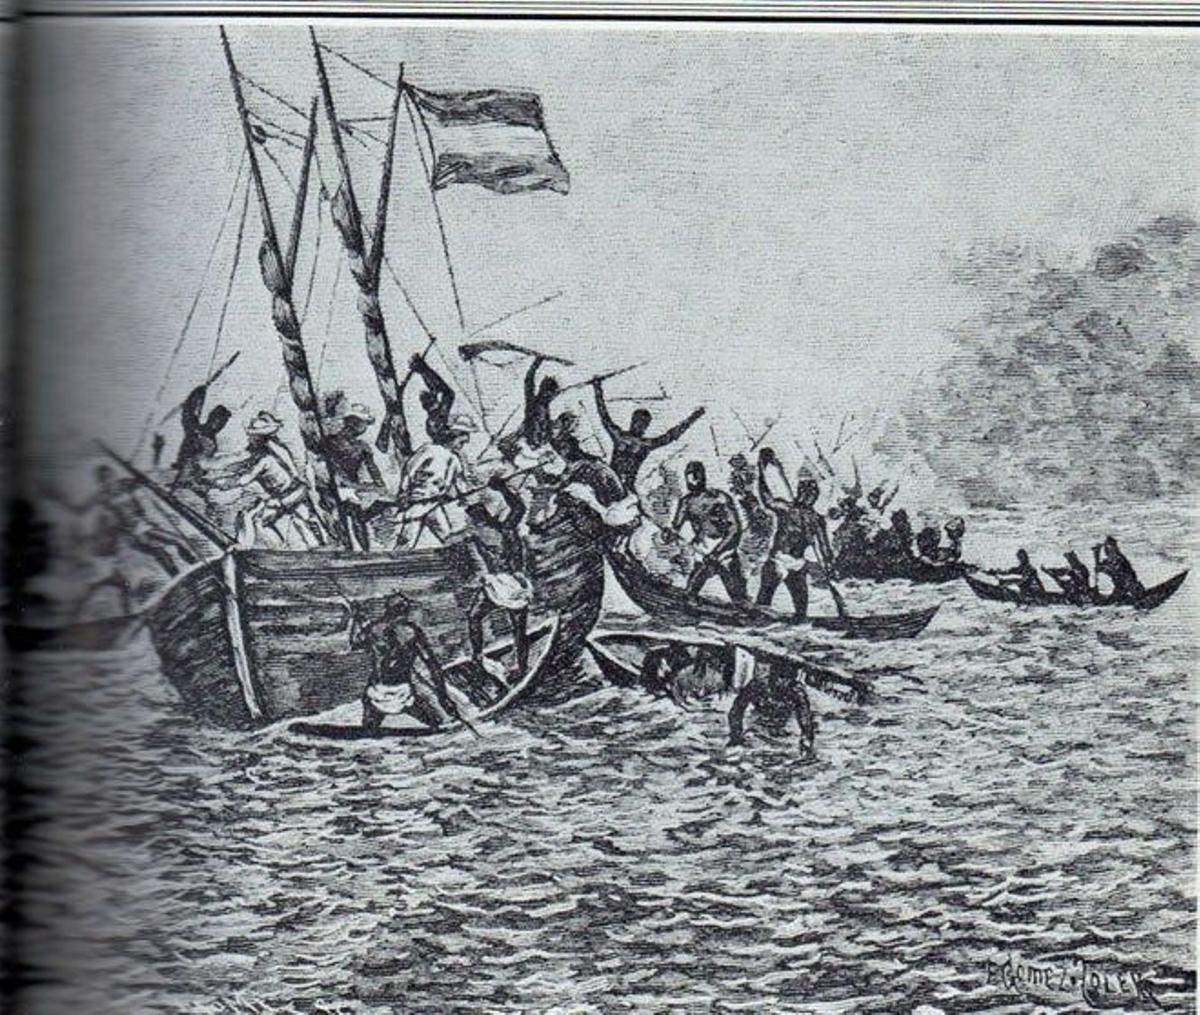 Piraguas aborddo la embarcacion de Iradier.